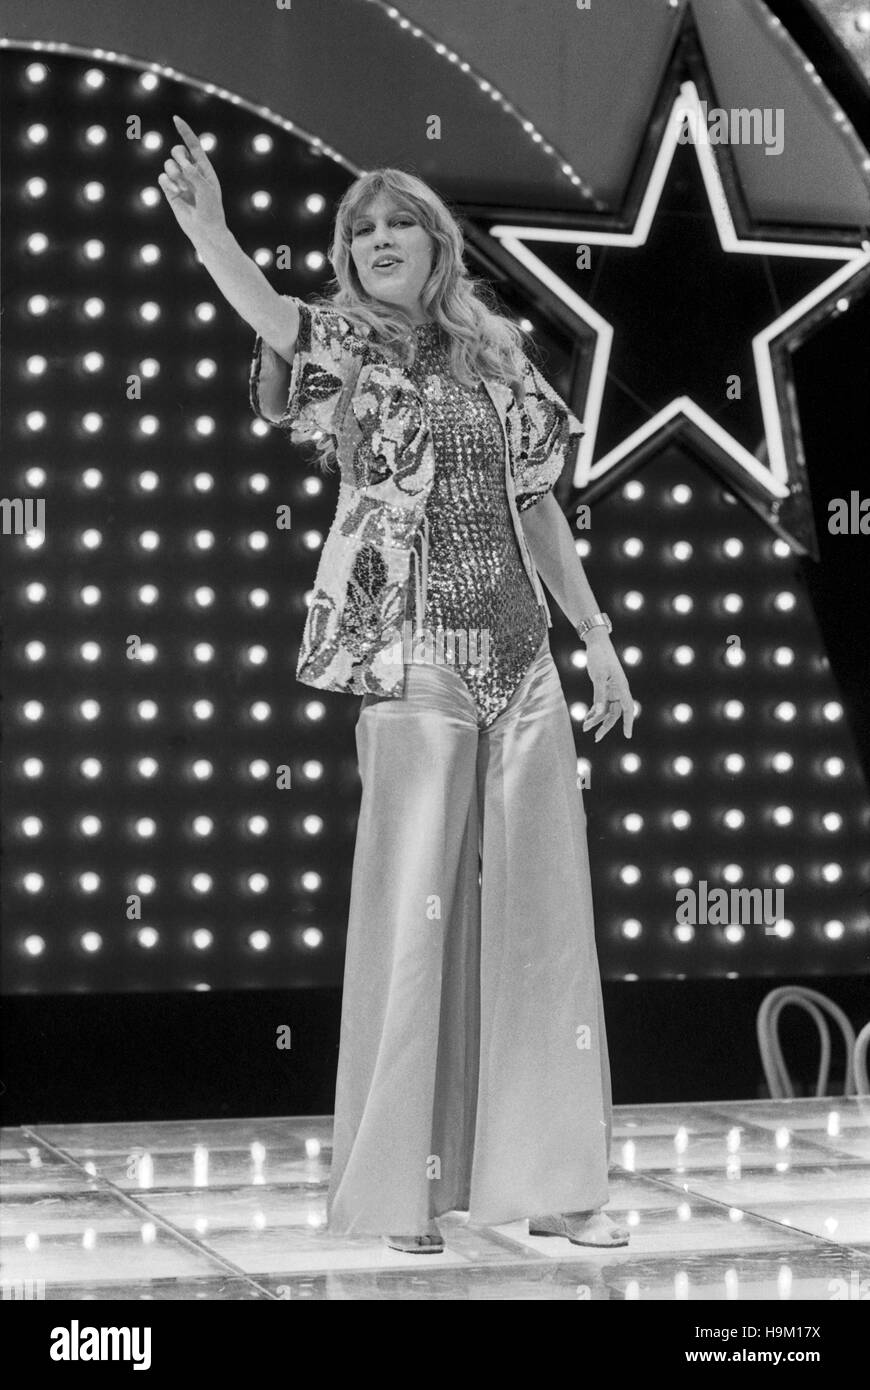 MOT - Music on top - Musik an der Spitze, Musiksendung, Deutschland 1978, Regie: Rainer Bertram, Mitwirkende: Sängerin Maggie MacNeal Stock Photo